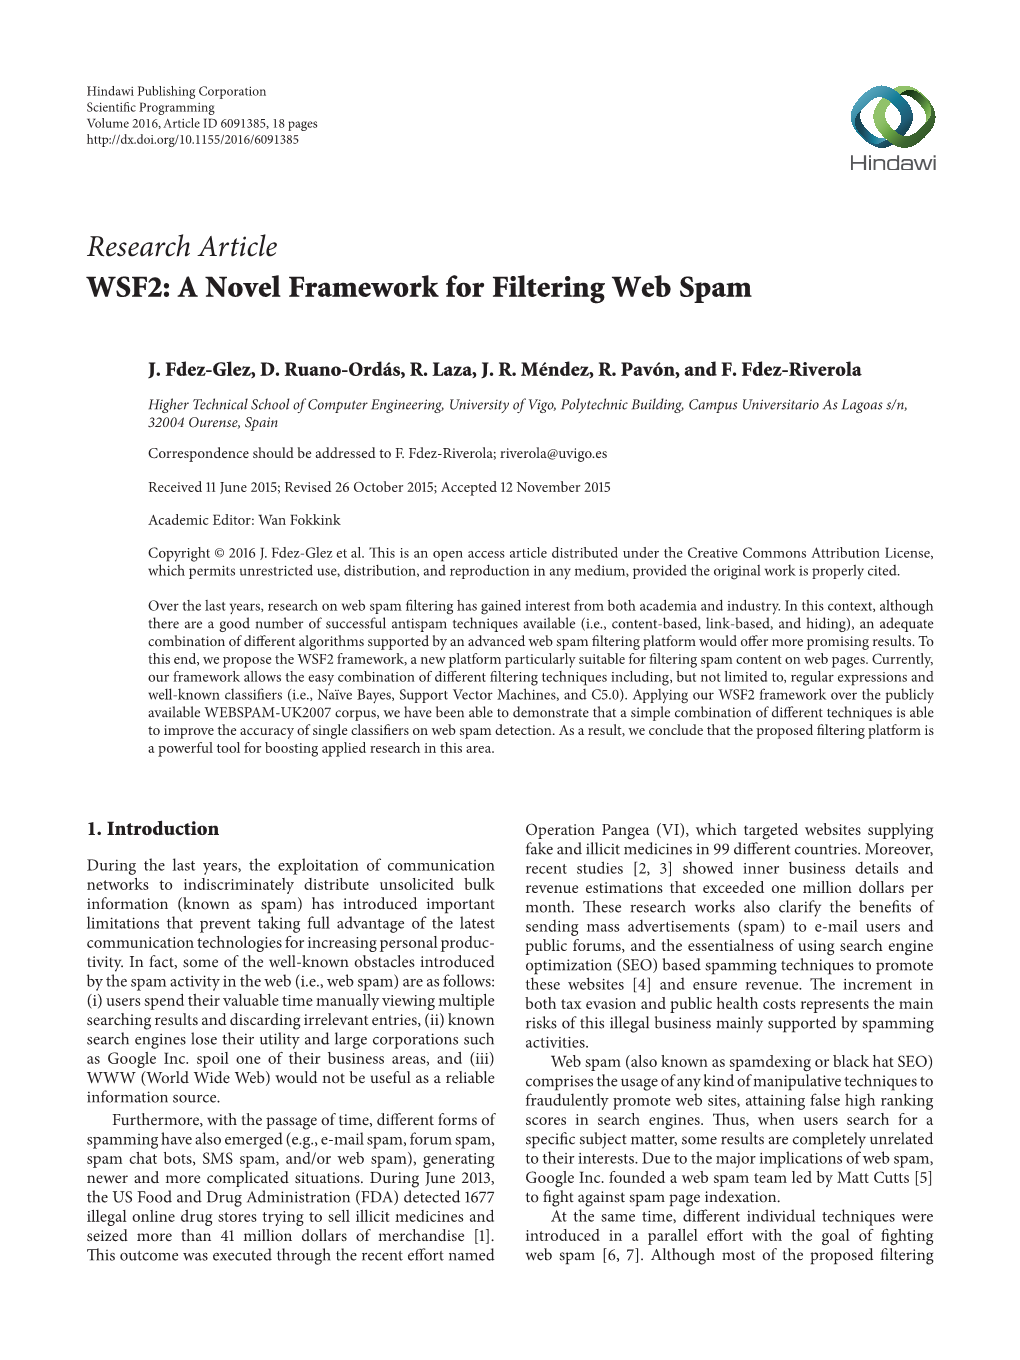 WSF2: a Novel Framework for Filtering Web Spam